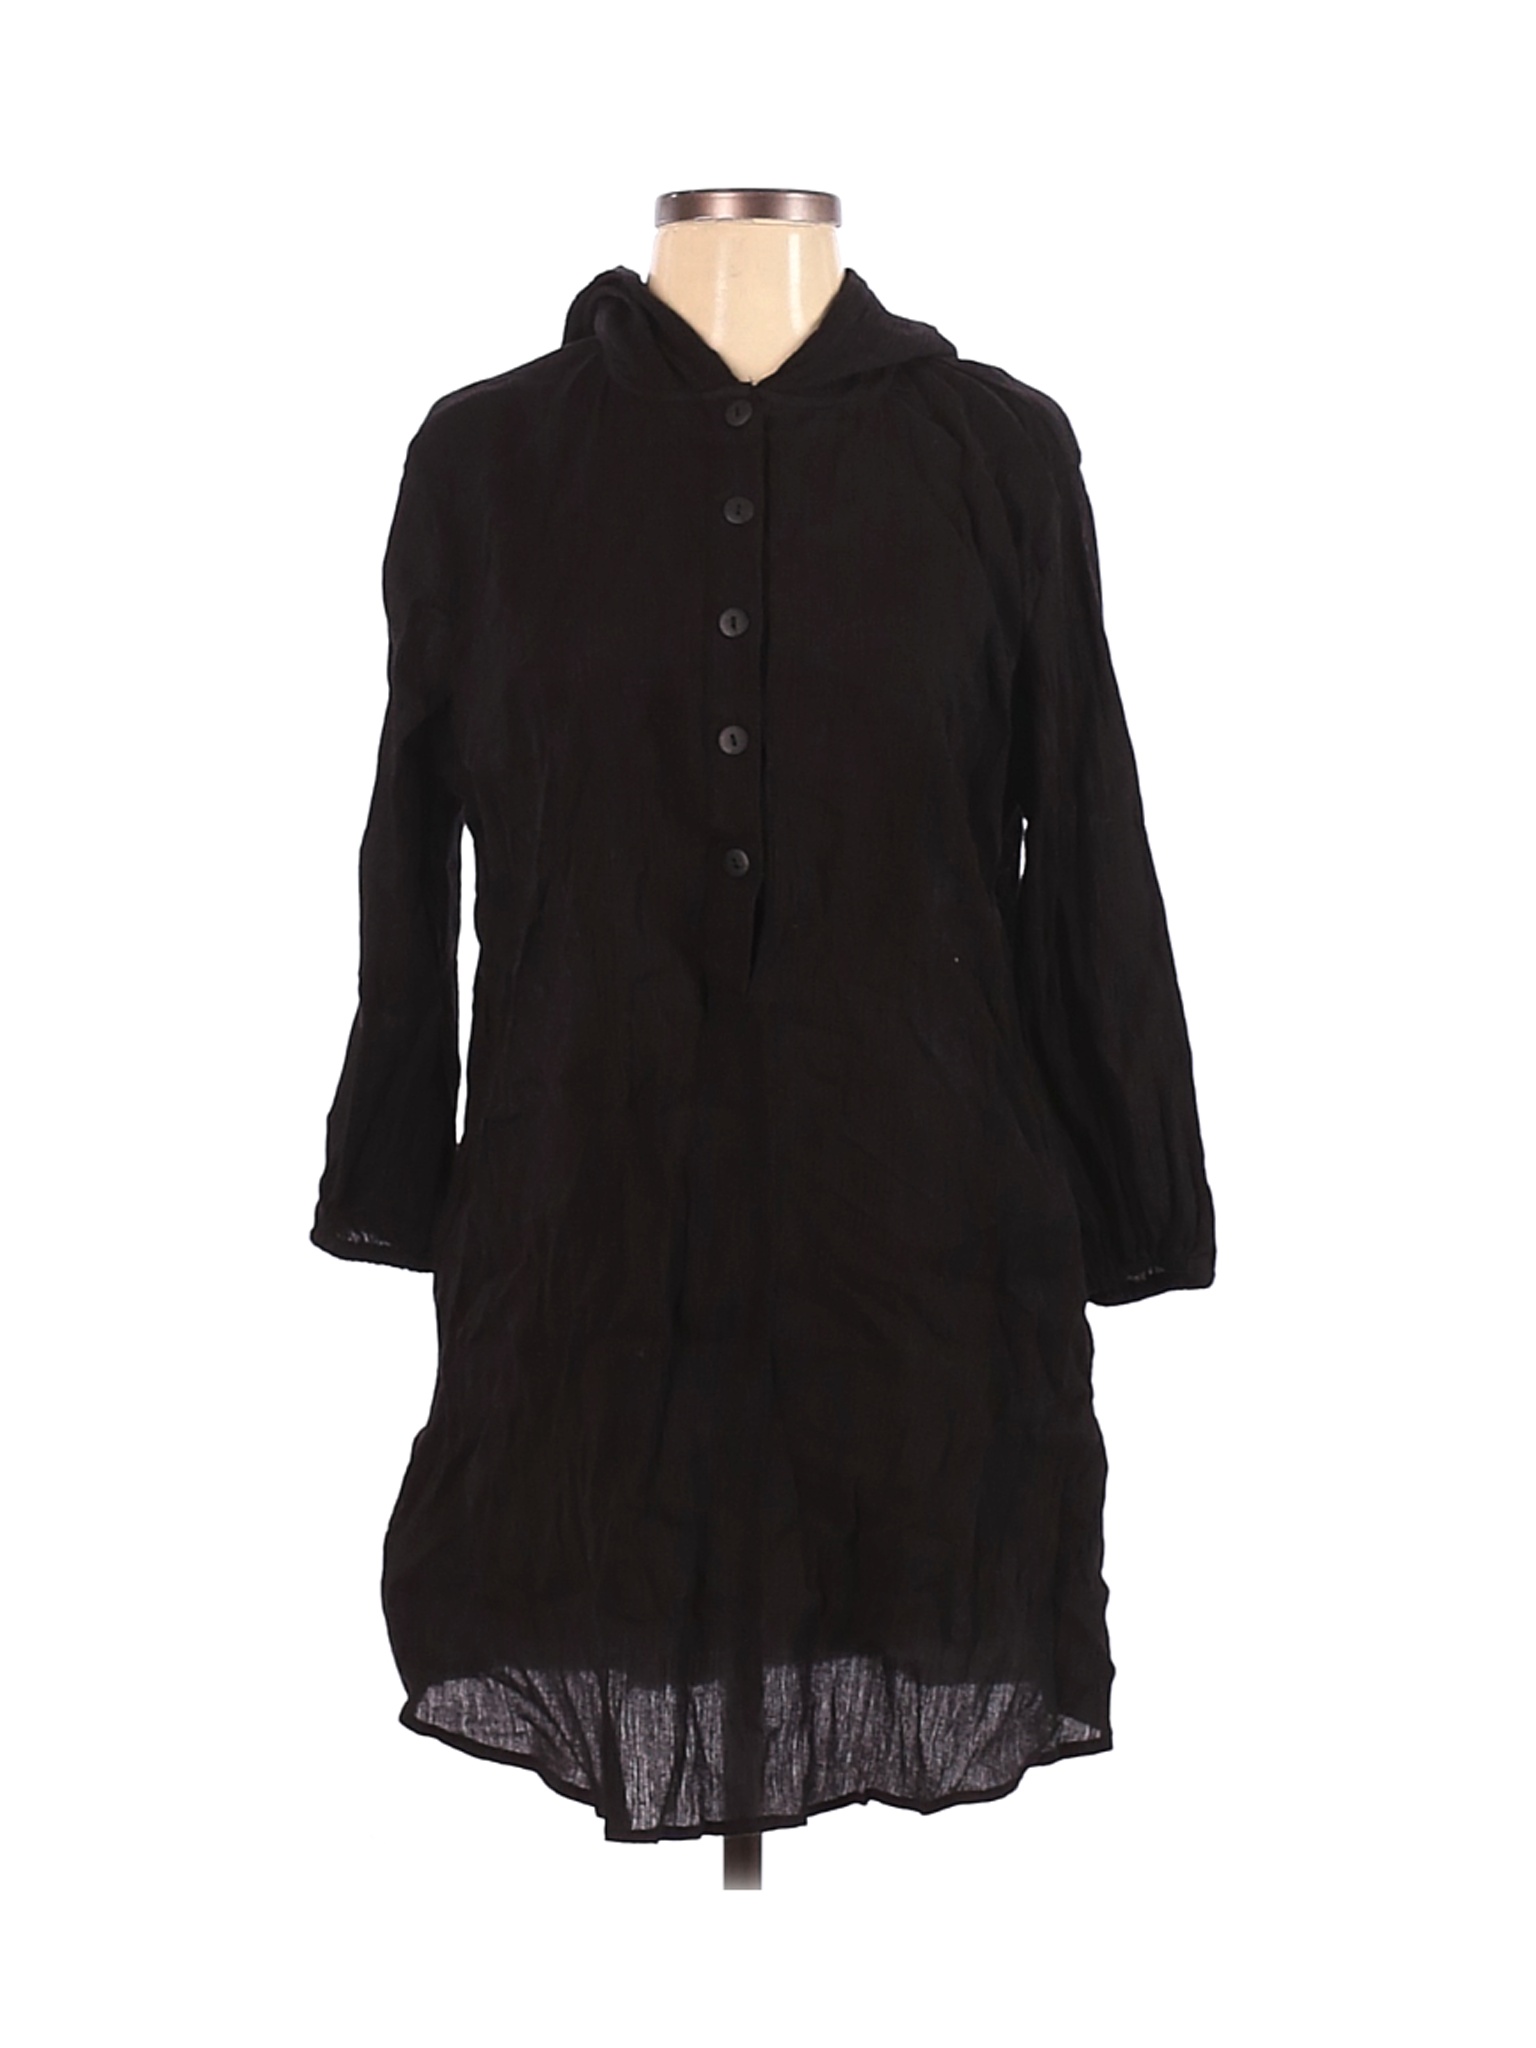 Magellan Sportswear Women Black Casual Dress S | eBay